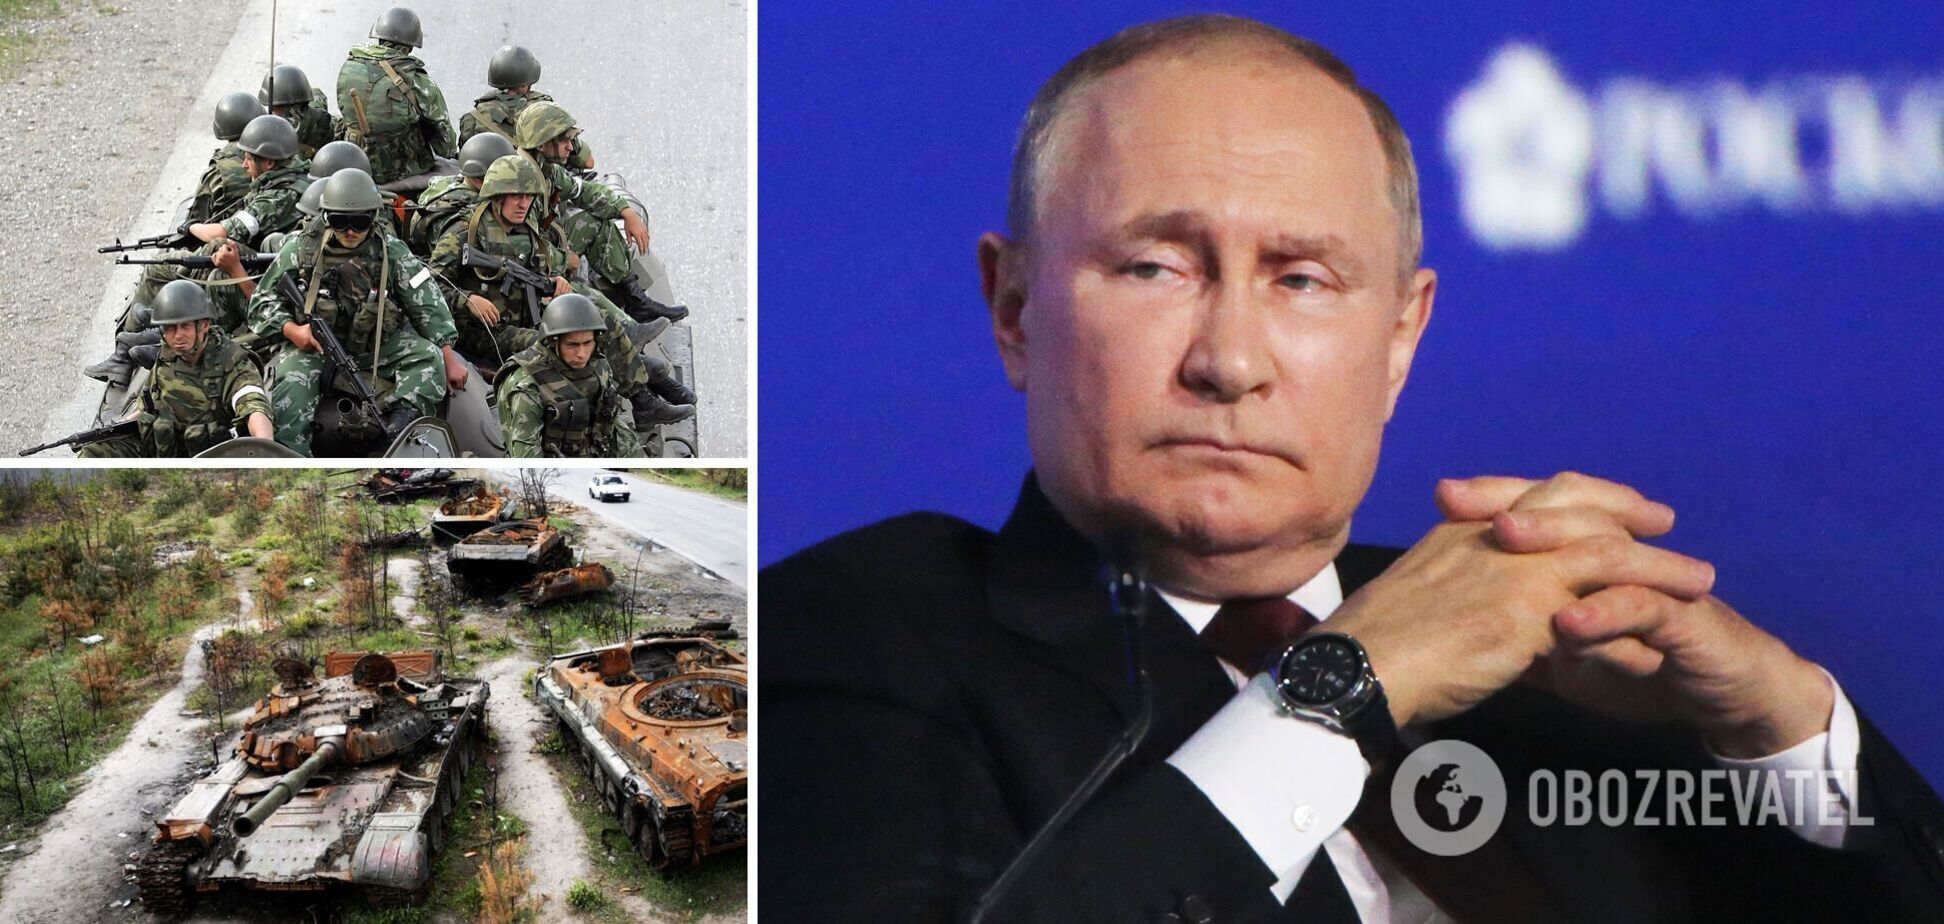 'Ми ще нічого не почали': Путін, армія якого втратила понад 50 тис. осіб в Україні, заявив, що війна 'на користь Росії'